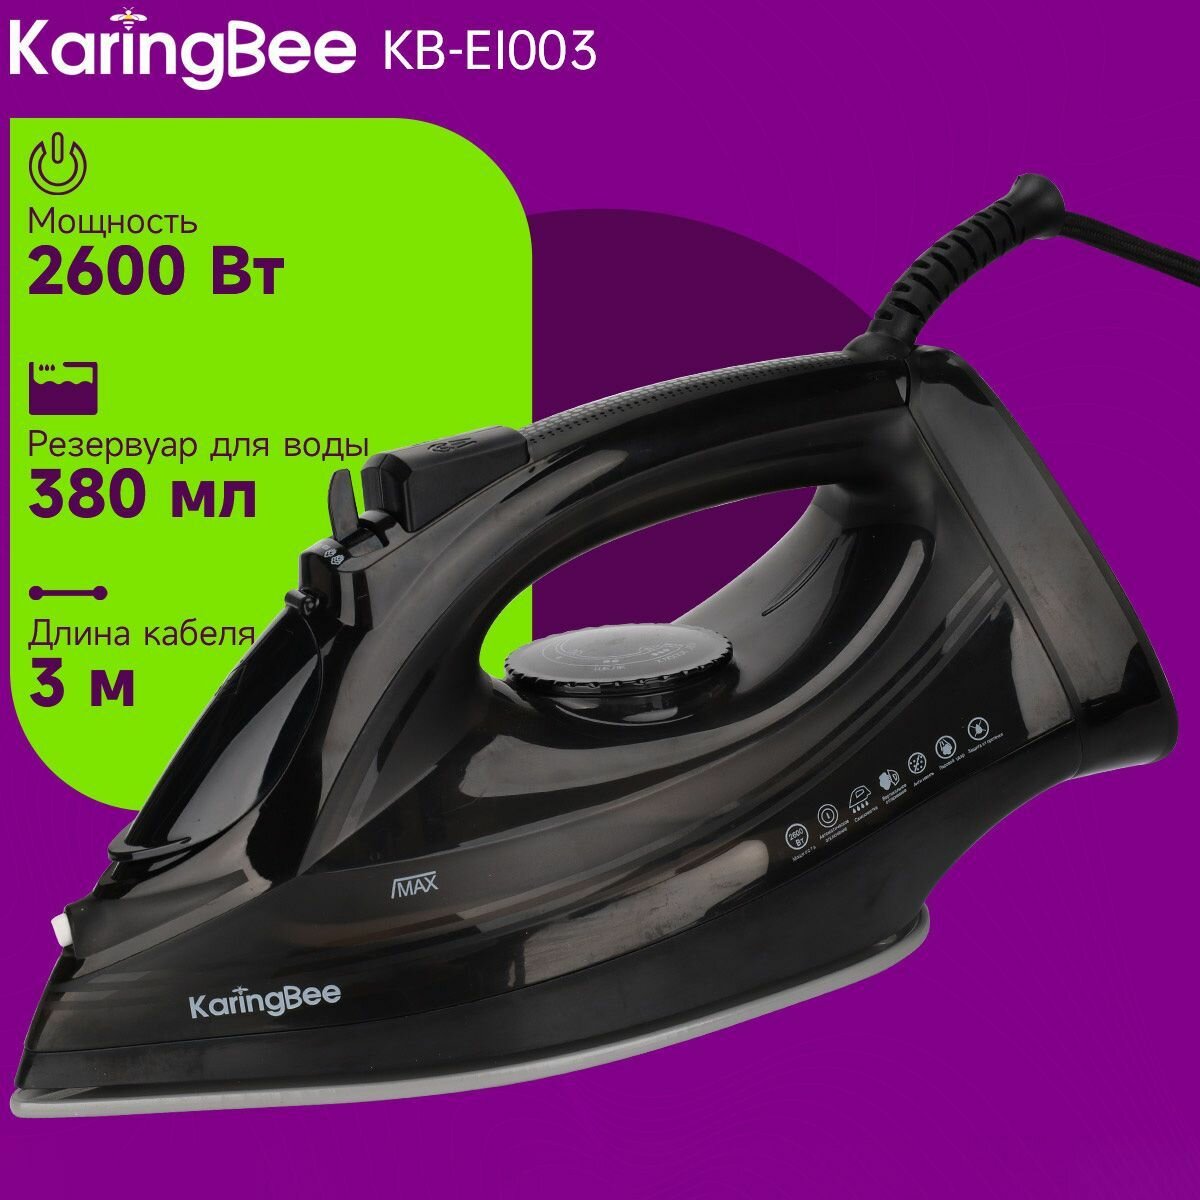 Утюг с отпаривателем KaringBee KB-EI003, черный